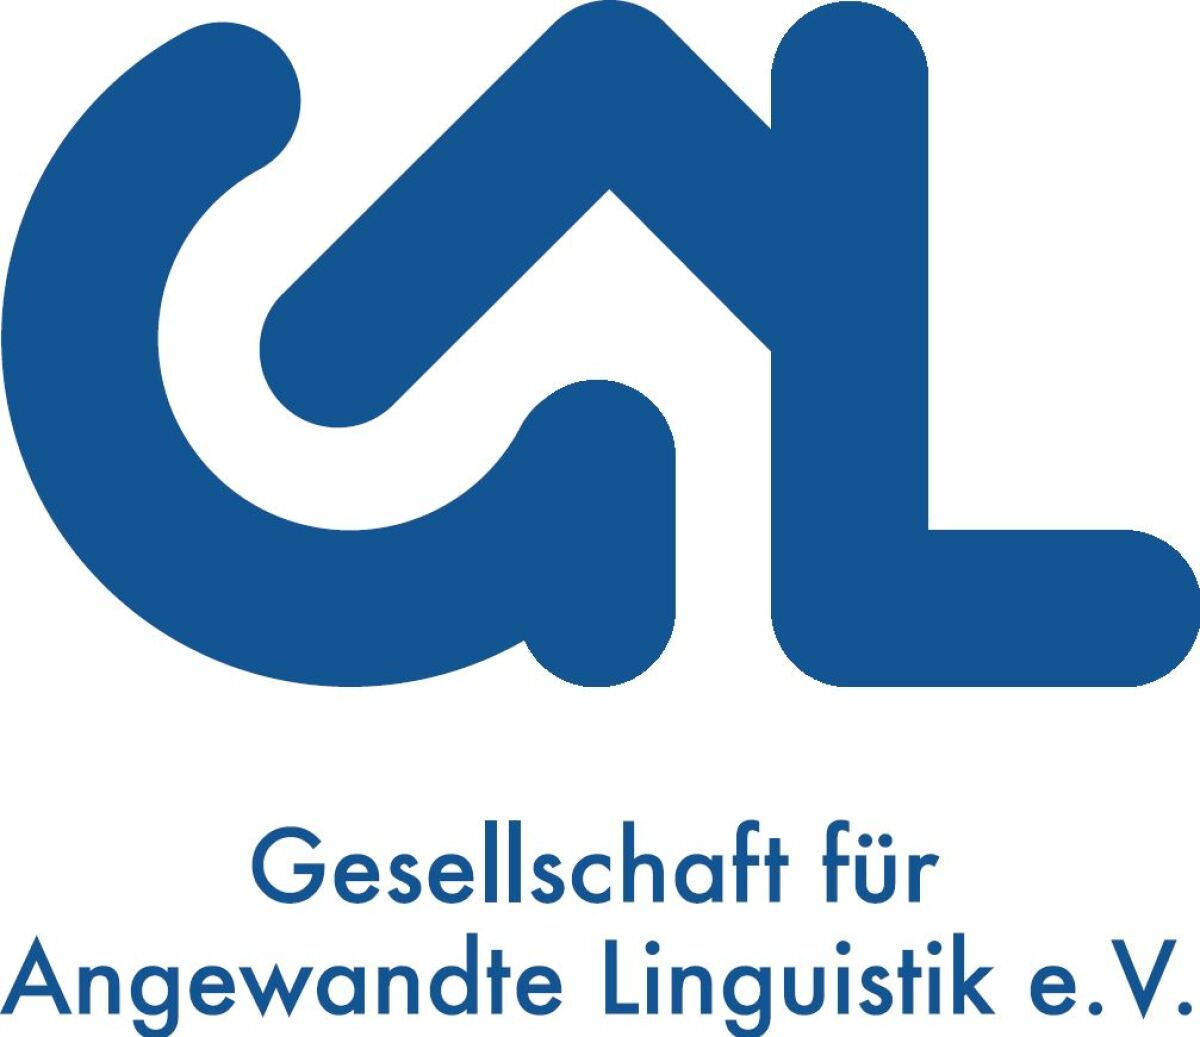 GAL-Logo